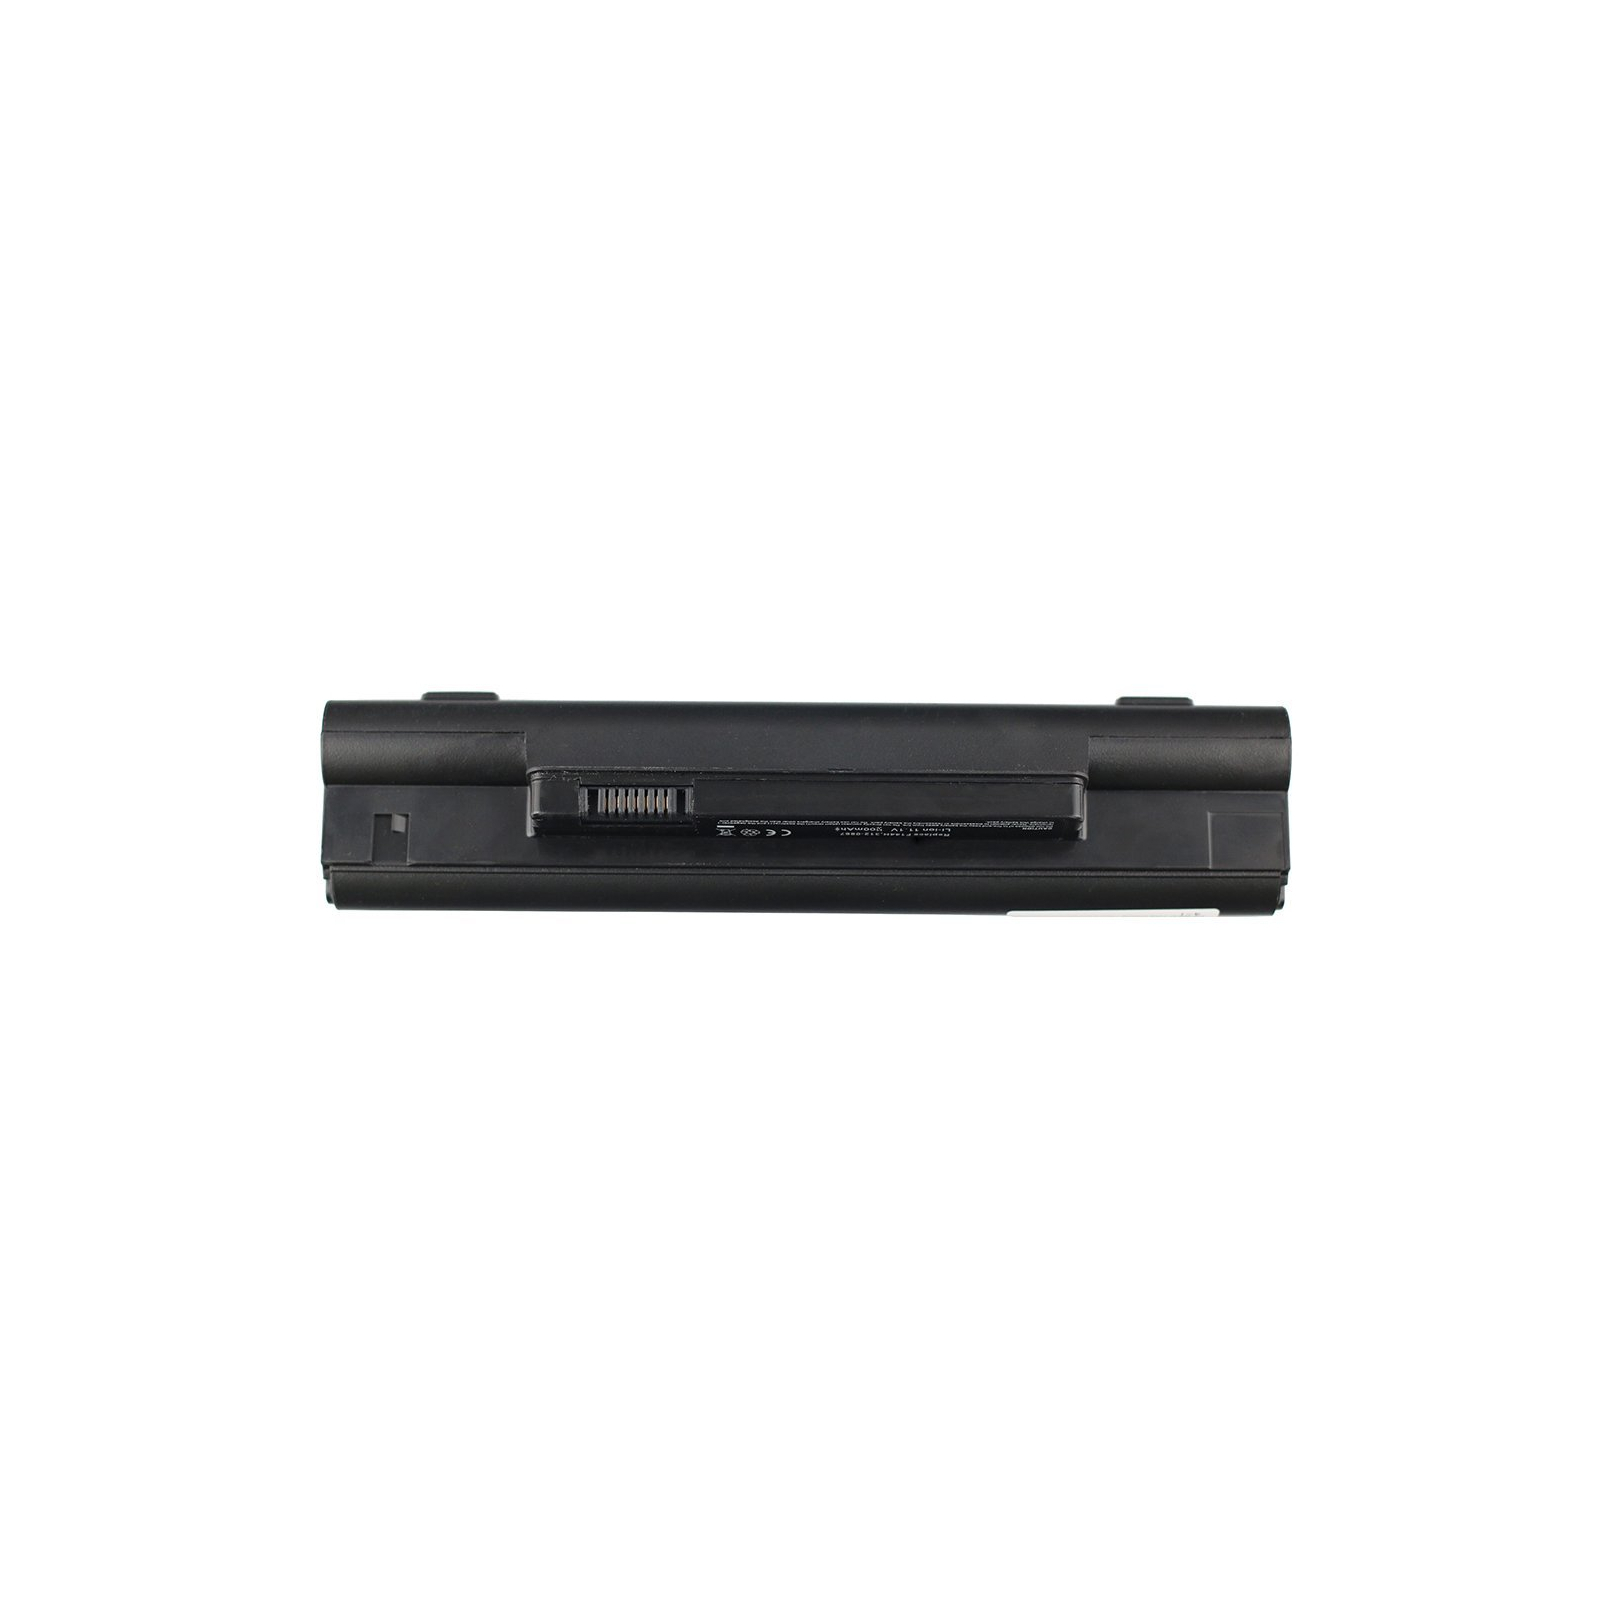 Акумулятор до ноутбука AlSoft Dell Inspiron mini 10 PP19S 2200mAh 3cell 11.1V Li-ion (A41401) зображення 3